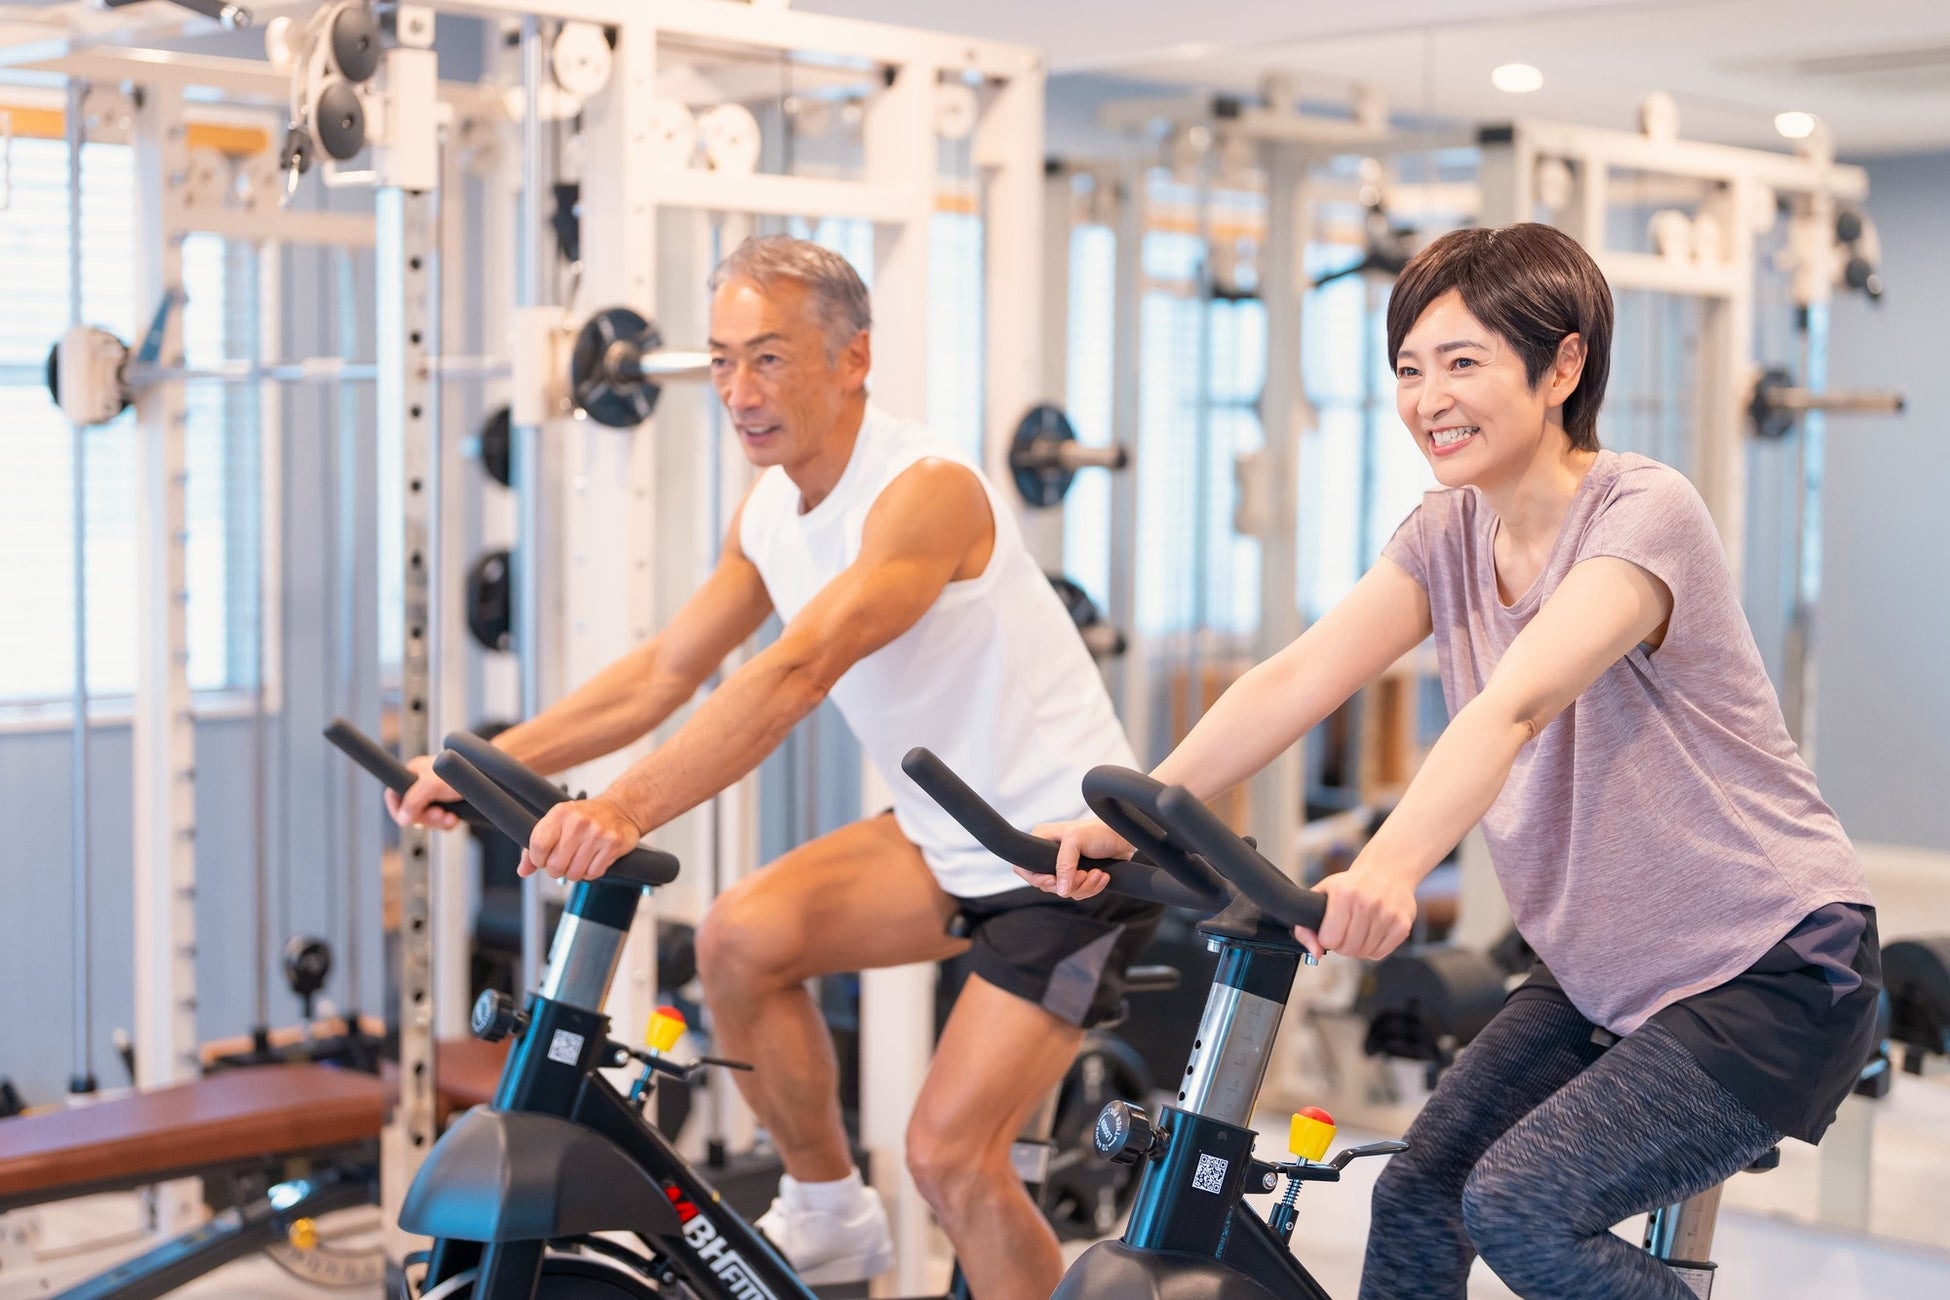 「運動習慣により身体の不調が減った人は驚異の〇%！」医師から運動を推奨されて運動を始めた人へ調査を実施！